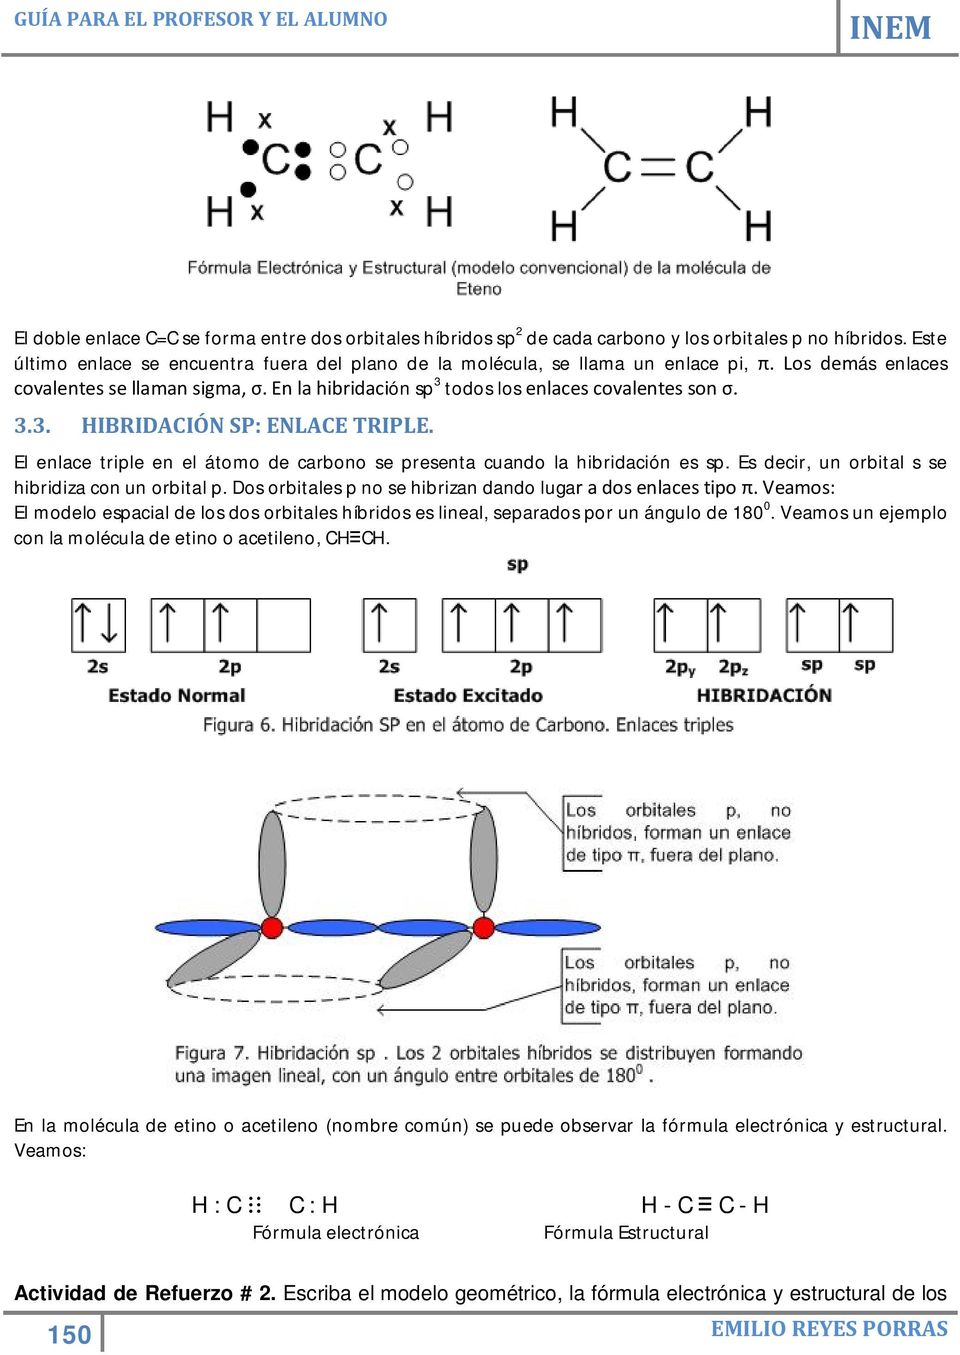 El enlace triple en el átomo de carbono se presenta cuando la hibridación es sp. Es decir, un orbital s se hibridiza con un orbital p. Dos orbitales p no se hibrizan dando lugar a dos enlaces tipo π.